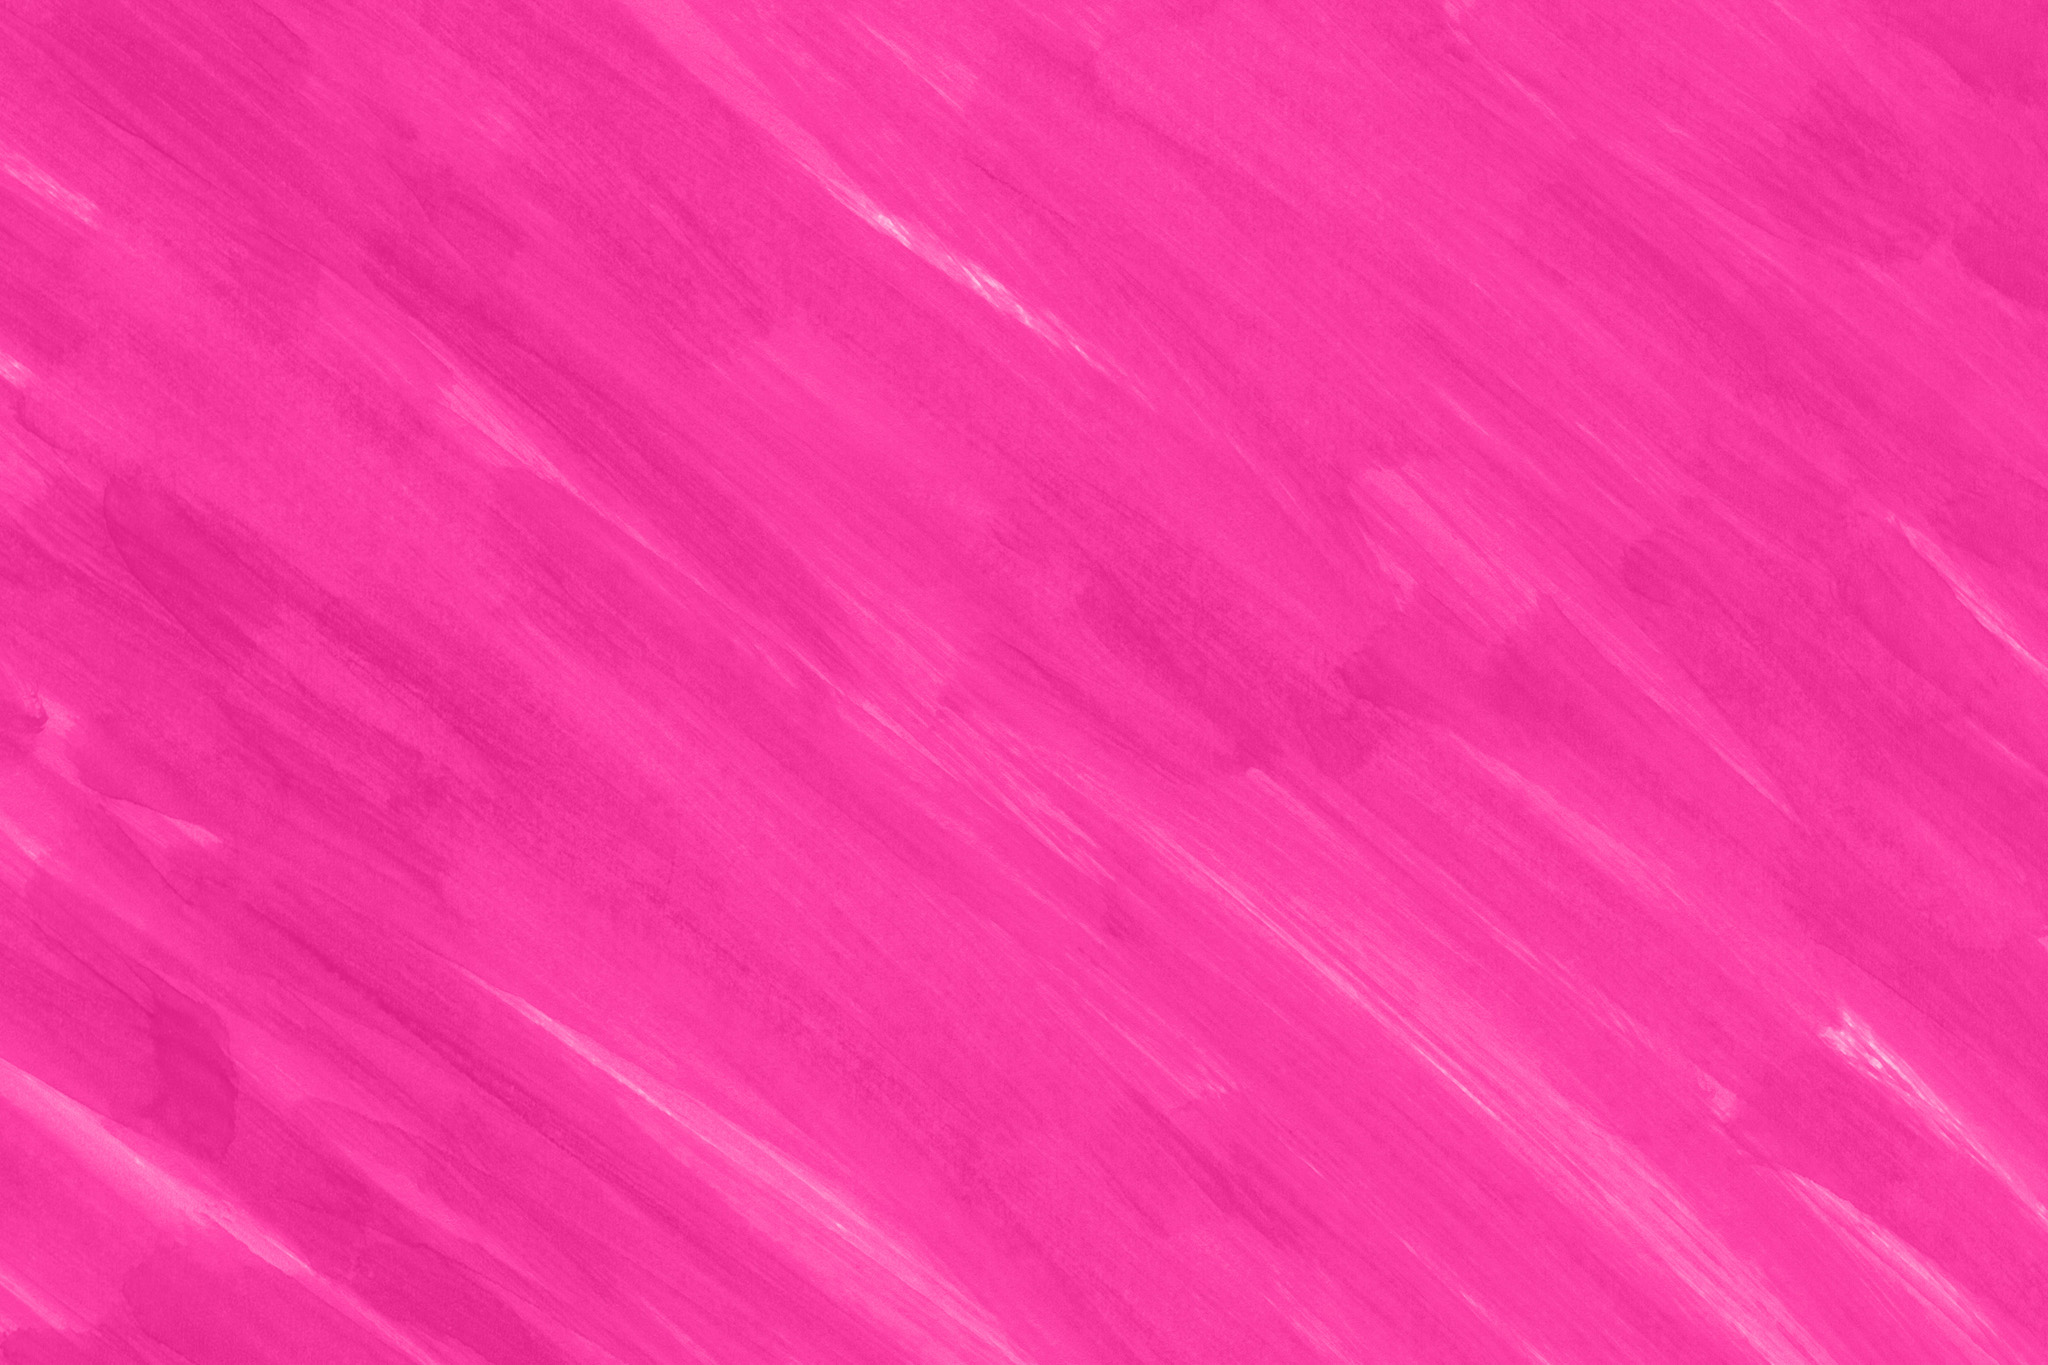 背景がピンクのおしゃれな素材 の画像素材を無料ダウンロード 1 フリー素材 Beiz Images